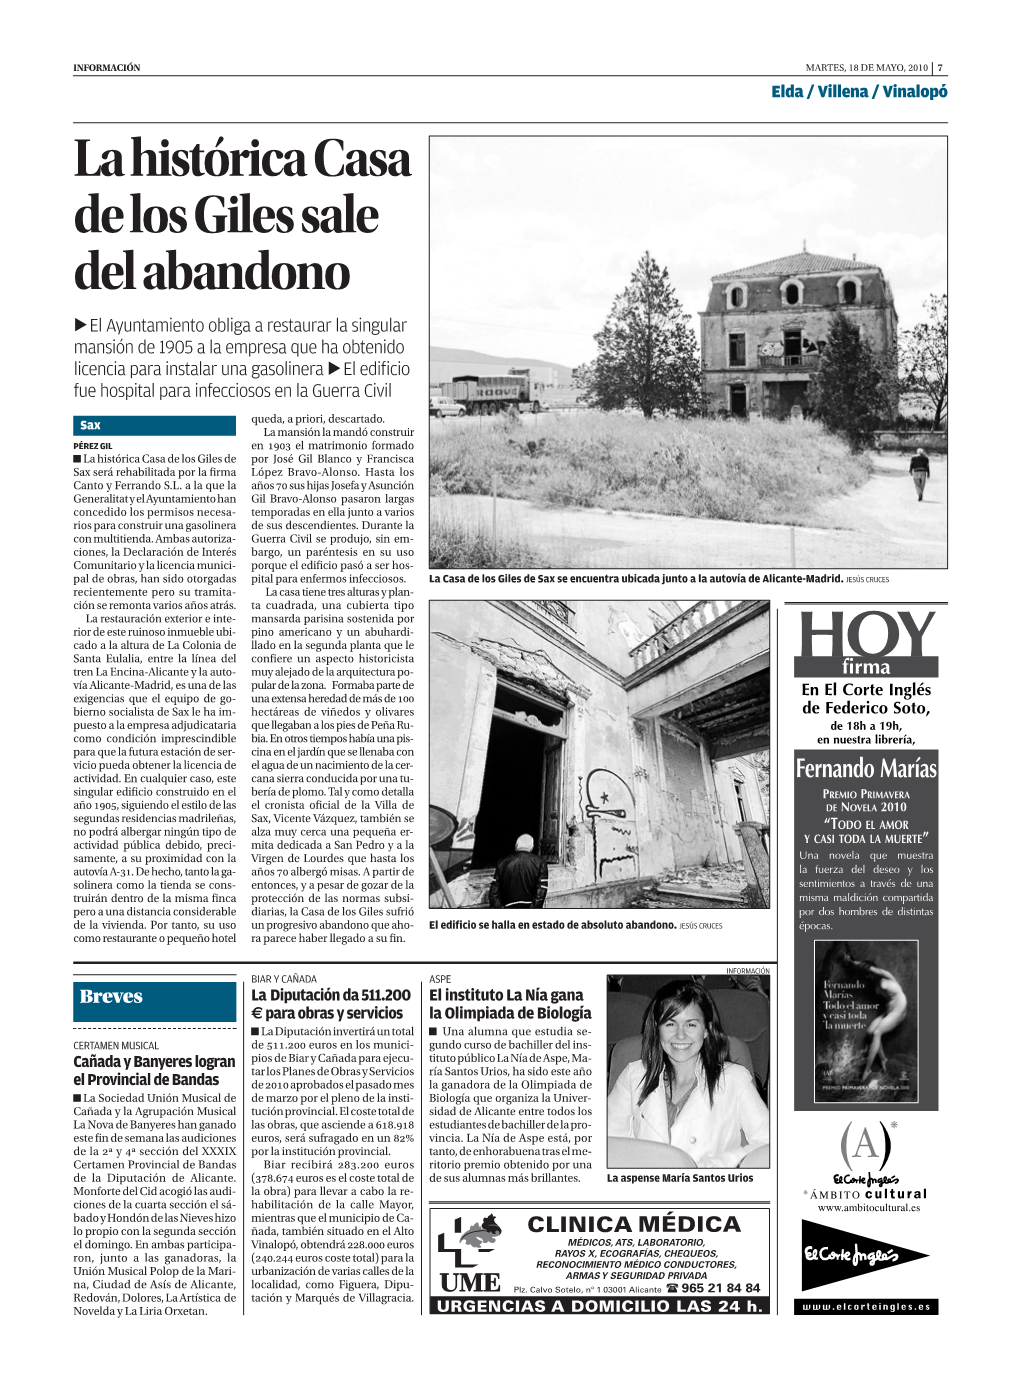 La Histórica Casa De Los Giles Sale Del Abandono